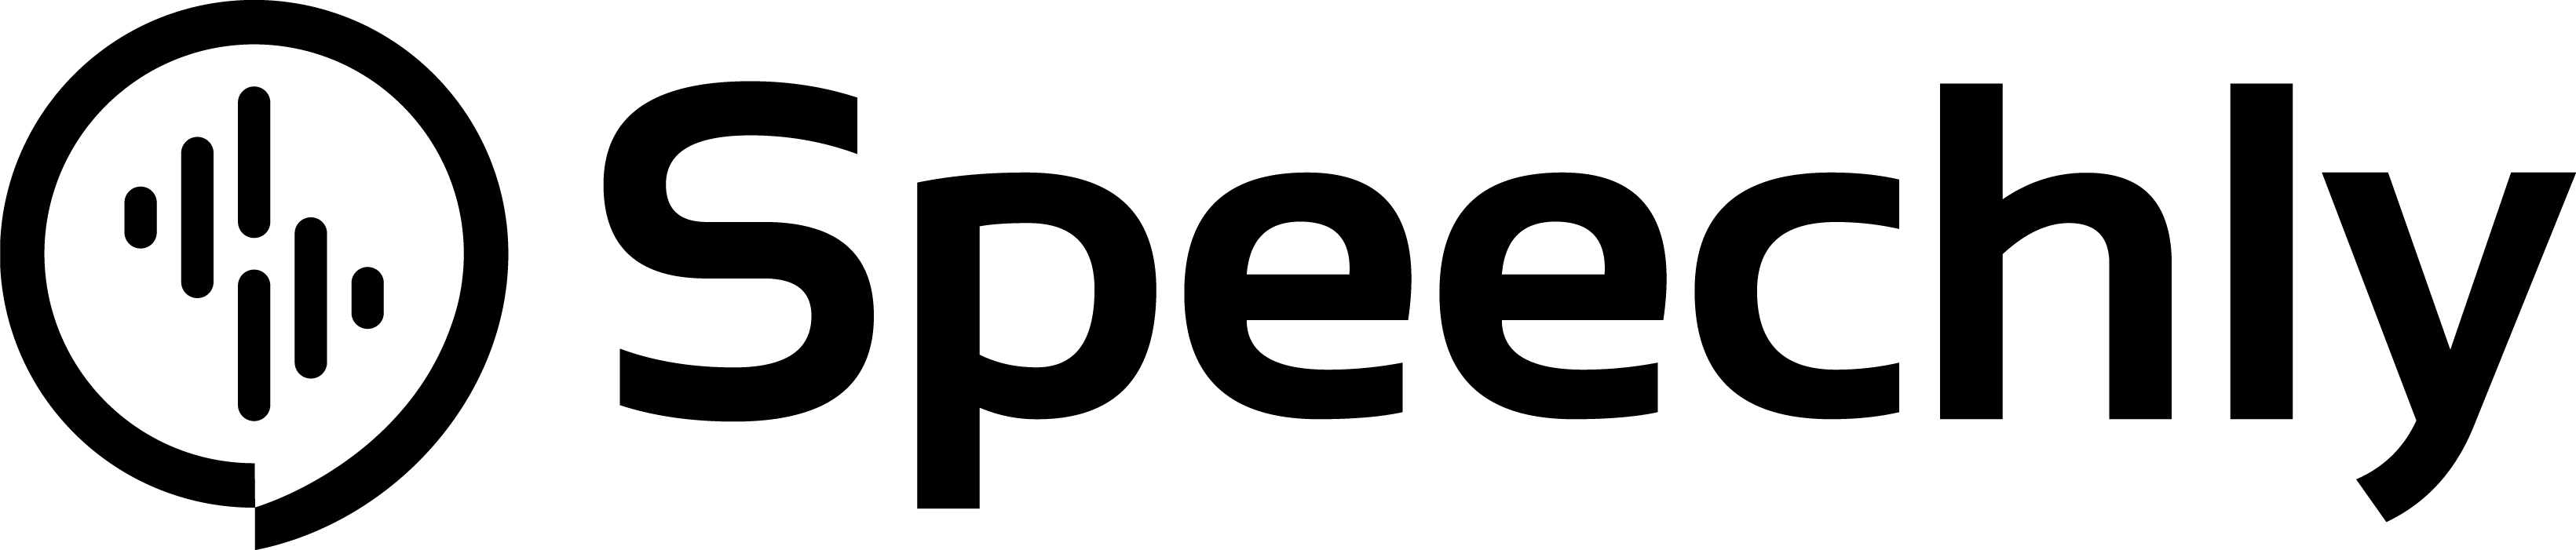 speechly logo